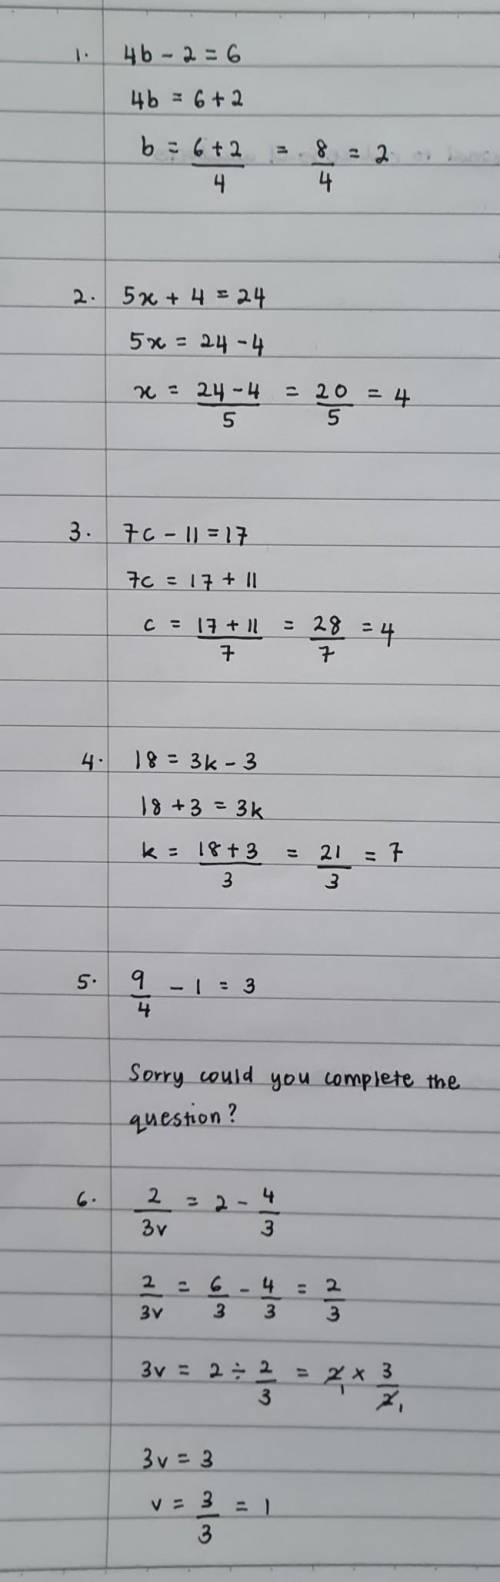 1) 4b - 2 = 6

2) 5x + 4 = 24
3) 7c - 11 = 17
4) 18 = 3k - 3
5) 9/4 - 1 = 3
6) 2/3v = 2 - 4/3